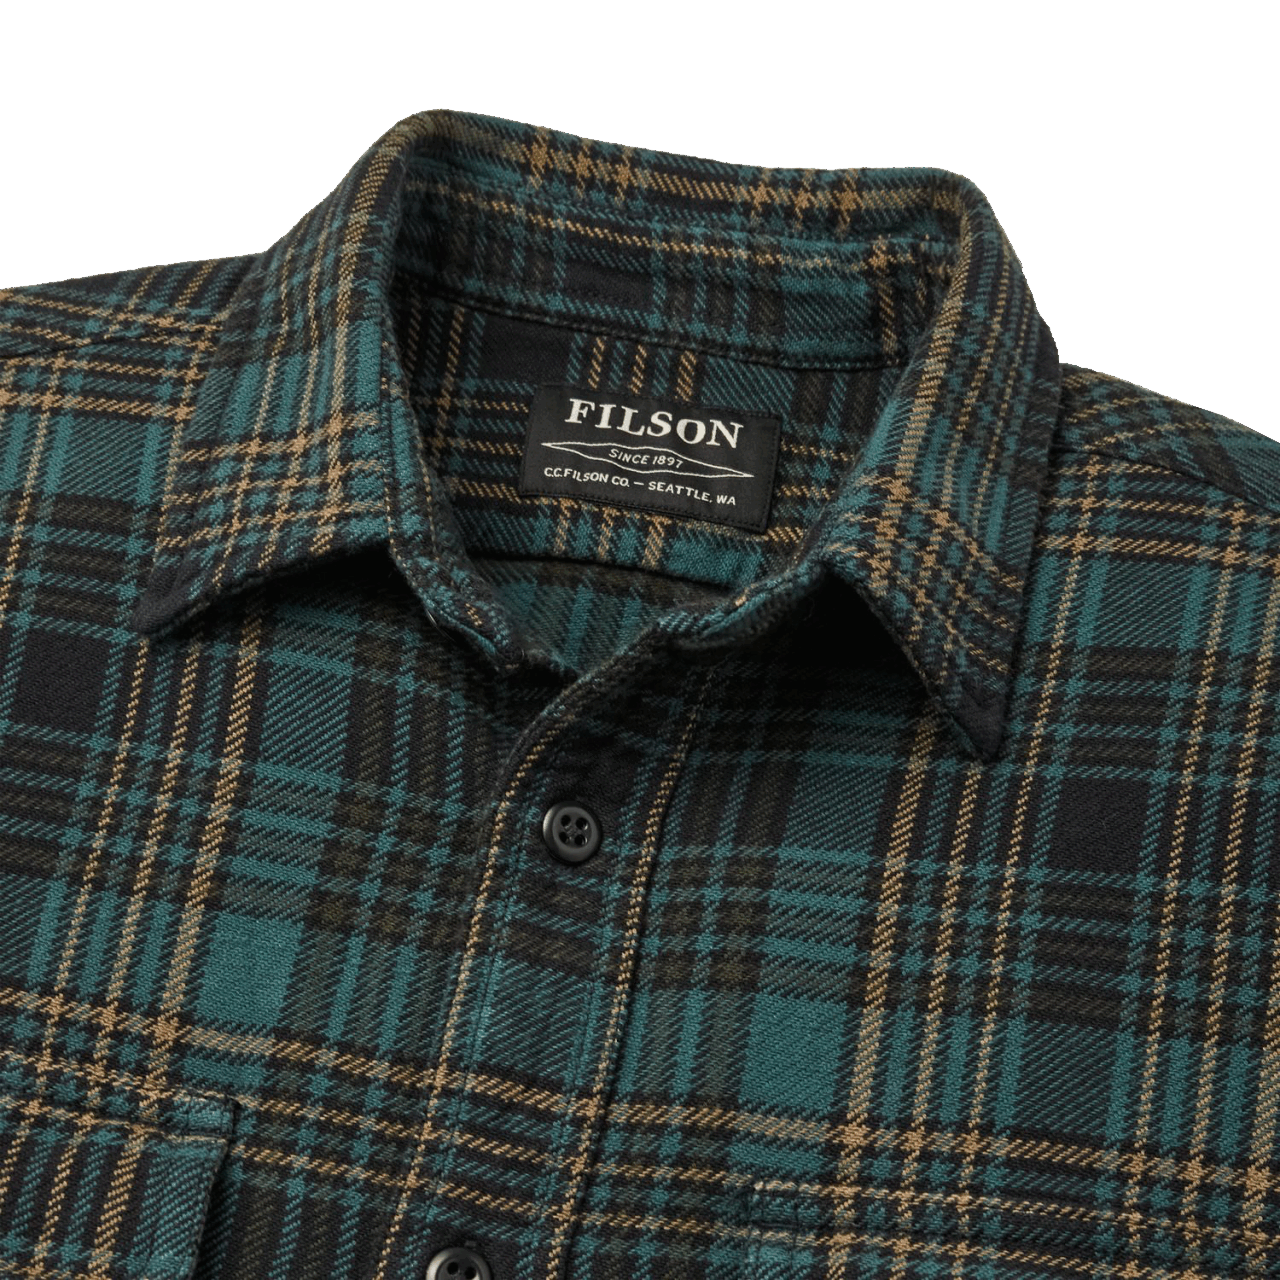 Filson Vintage Flannel Work Shirt - green/olive/black